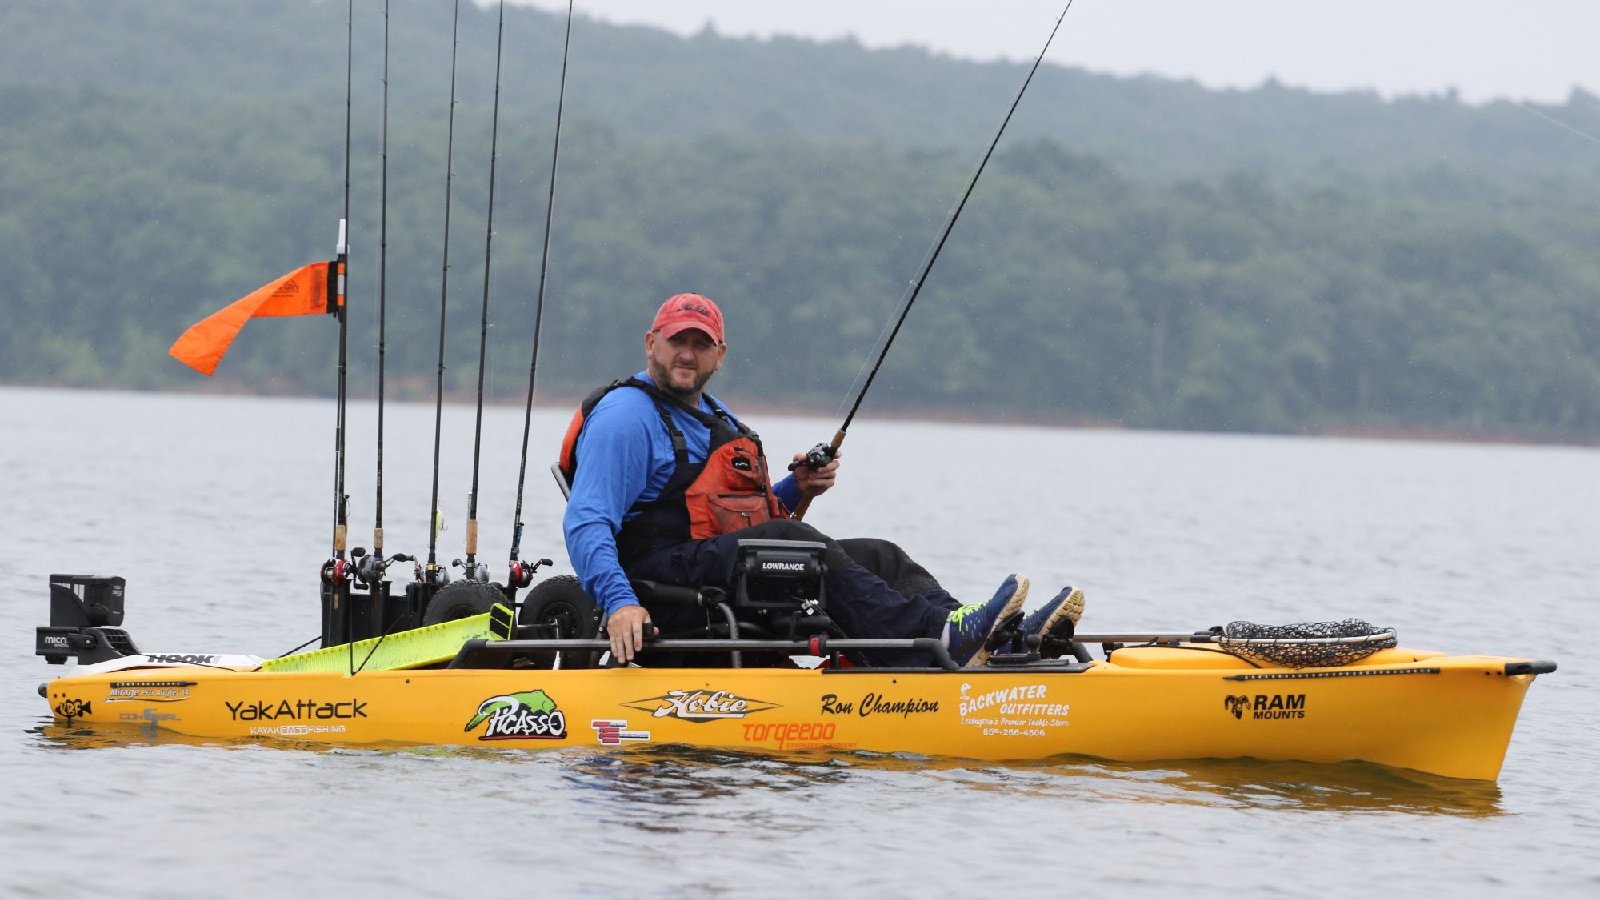 Ron Champion - Kayak Fishing Pro